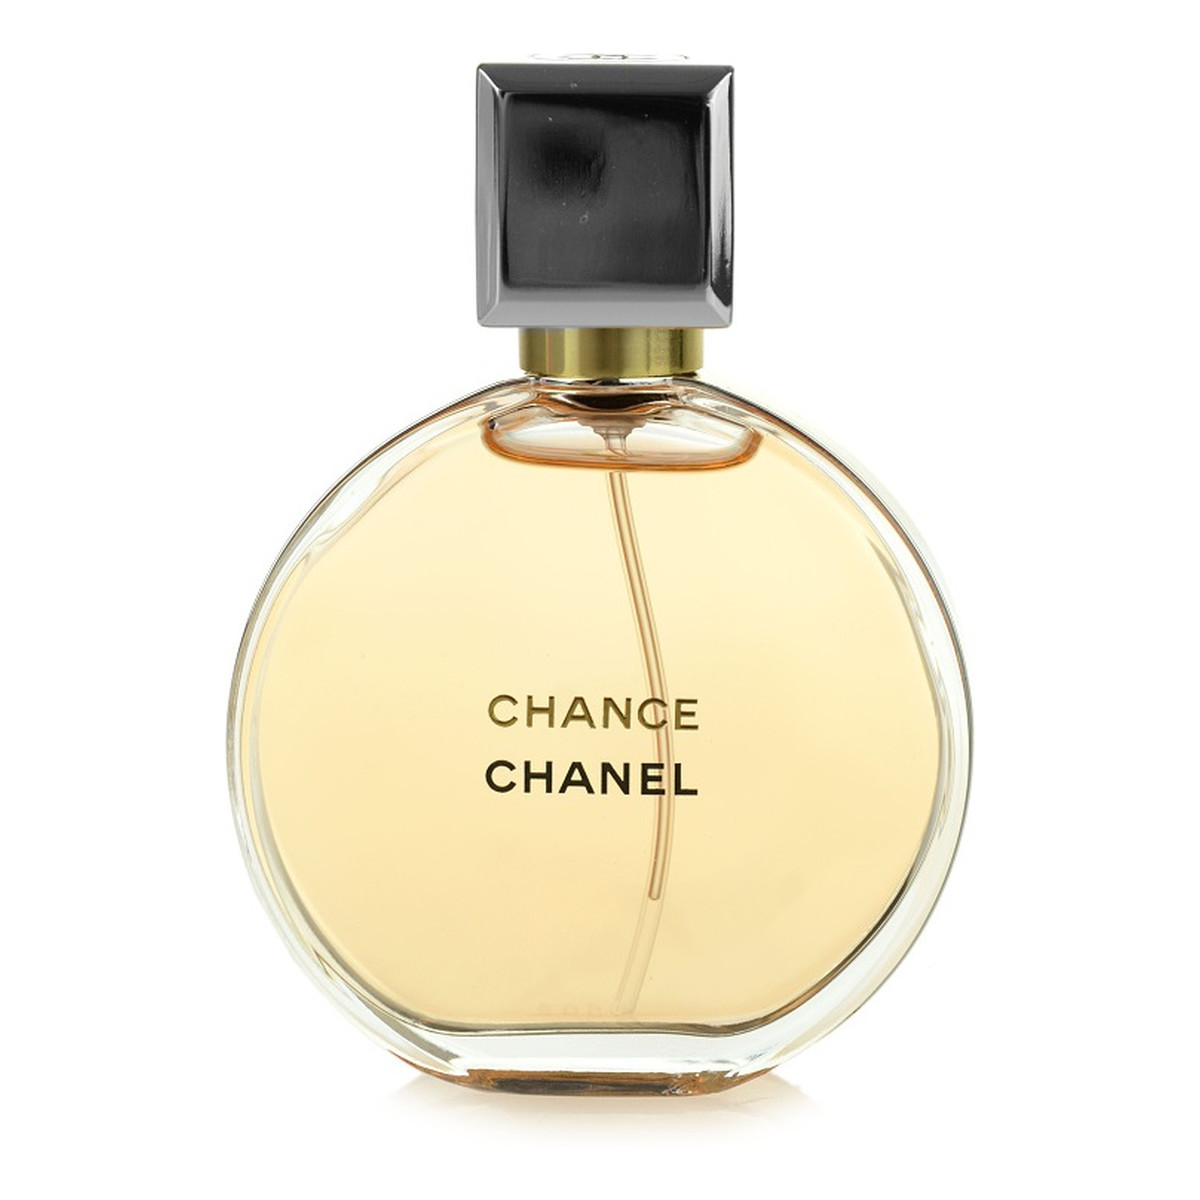 Chanel Chance woda perfumowana dla kobiet 50ml